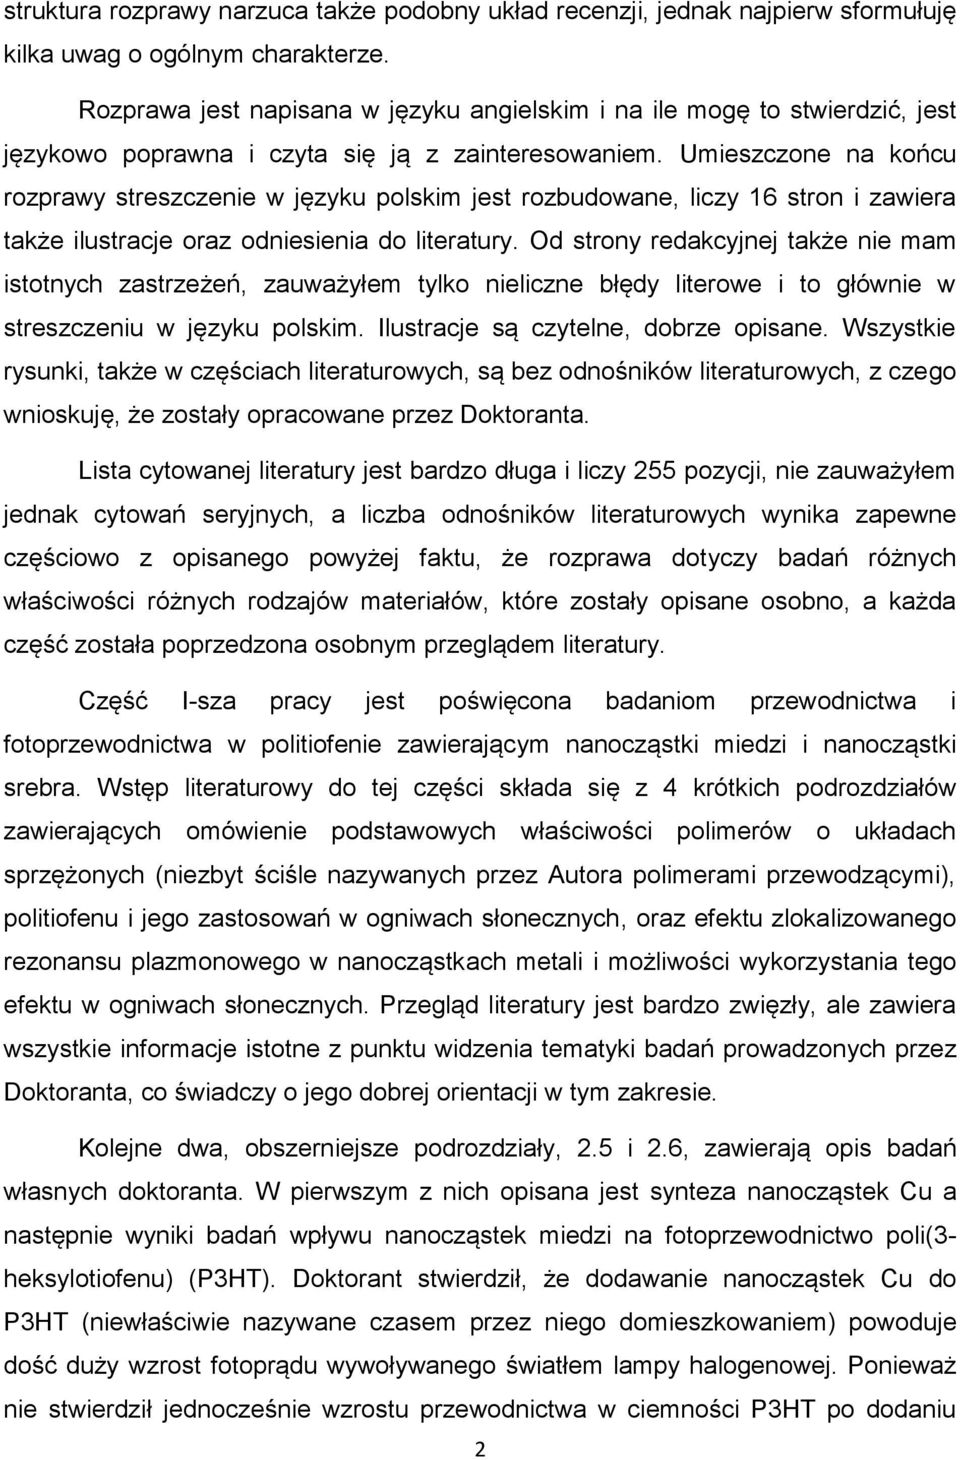 Umieszczone na końcu rozprawy streszczenie w języku polskim jest rozbudowane, liczy 16 stron i zawiera także ilustracje oraz odniesienia do literatury.